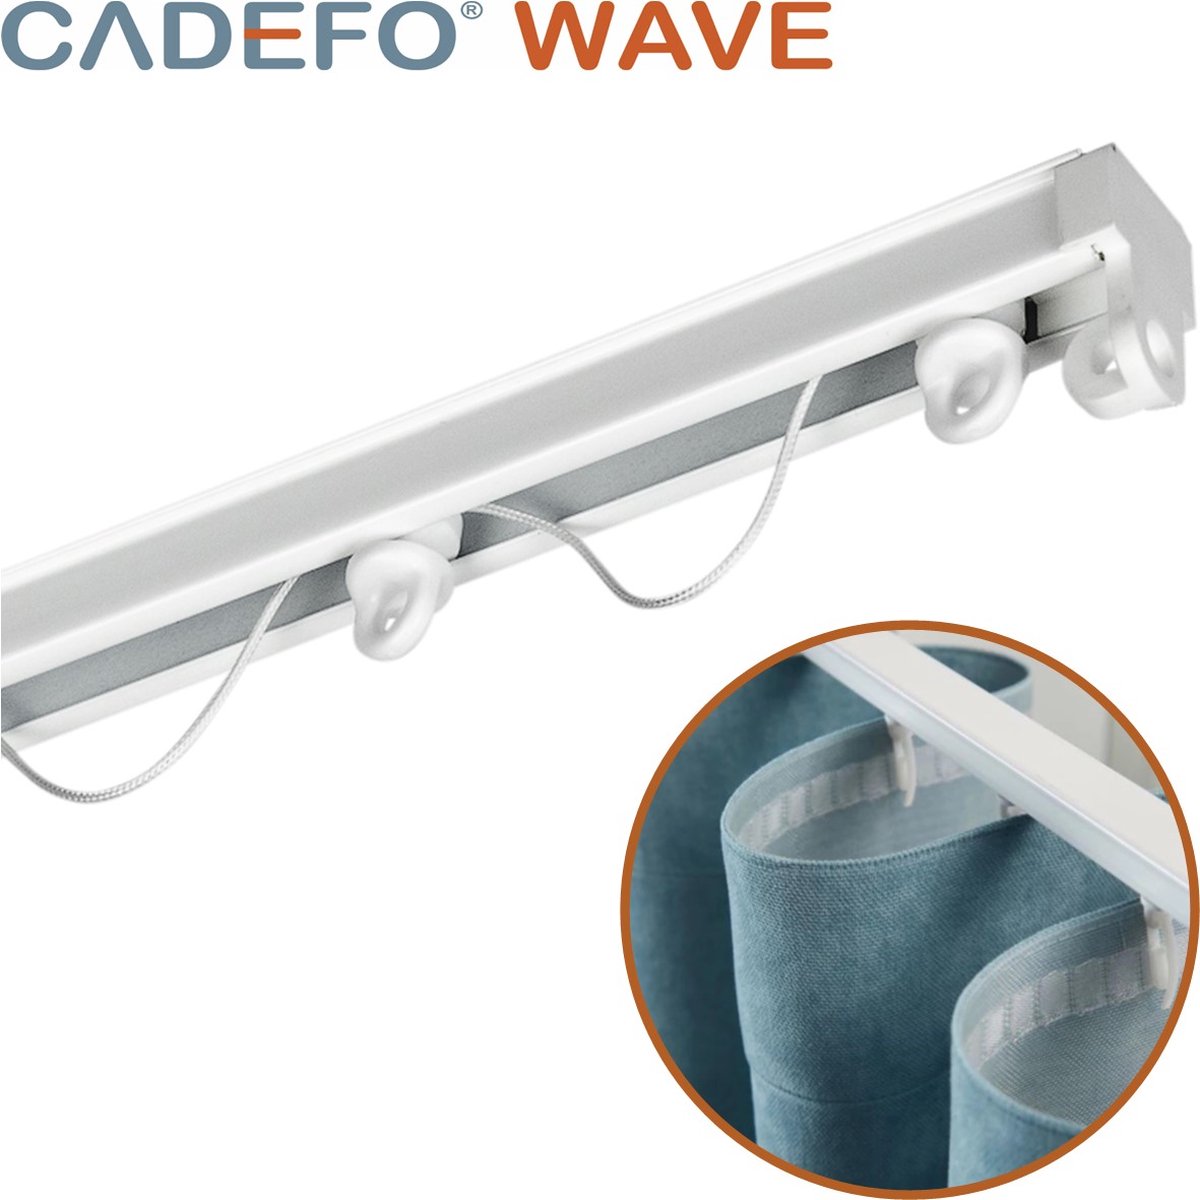 CADEFO WAVE (451 - 500 cm) Gordijnrails - Compleet op maat! - UIT 1 STUK - Leverbaar tot 6 meter - Plafondbevestiging - Lengte 457 cm